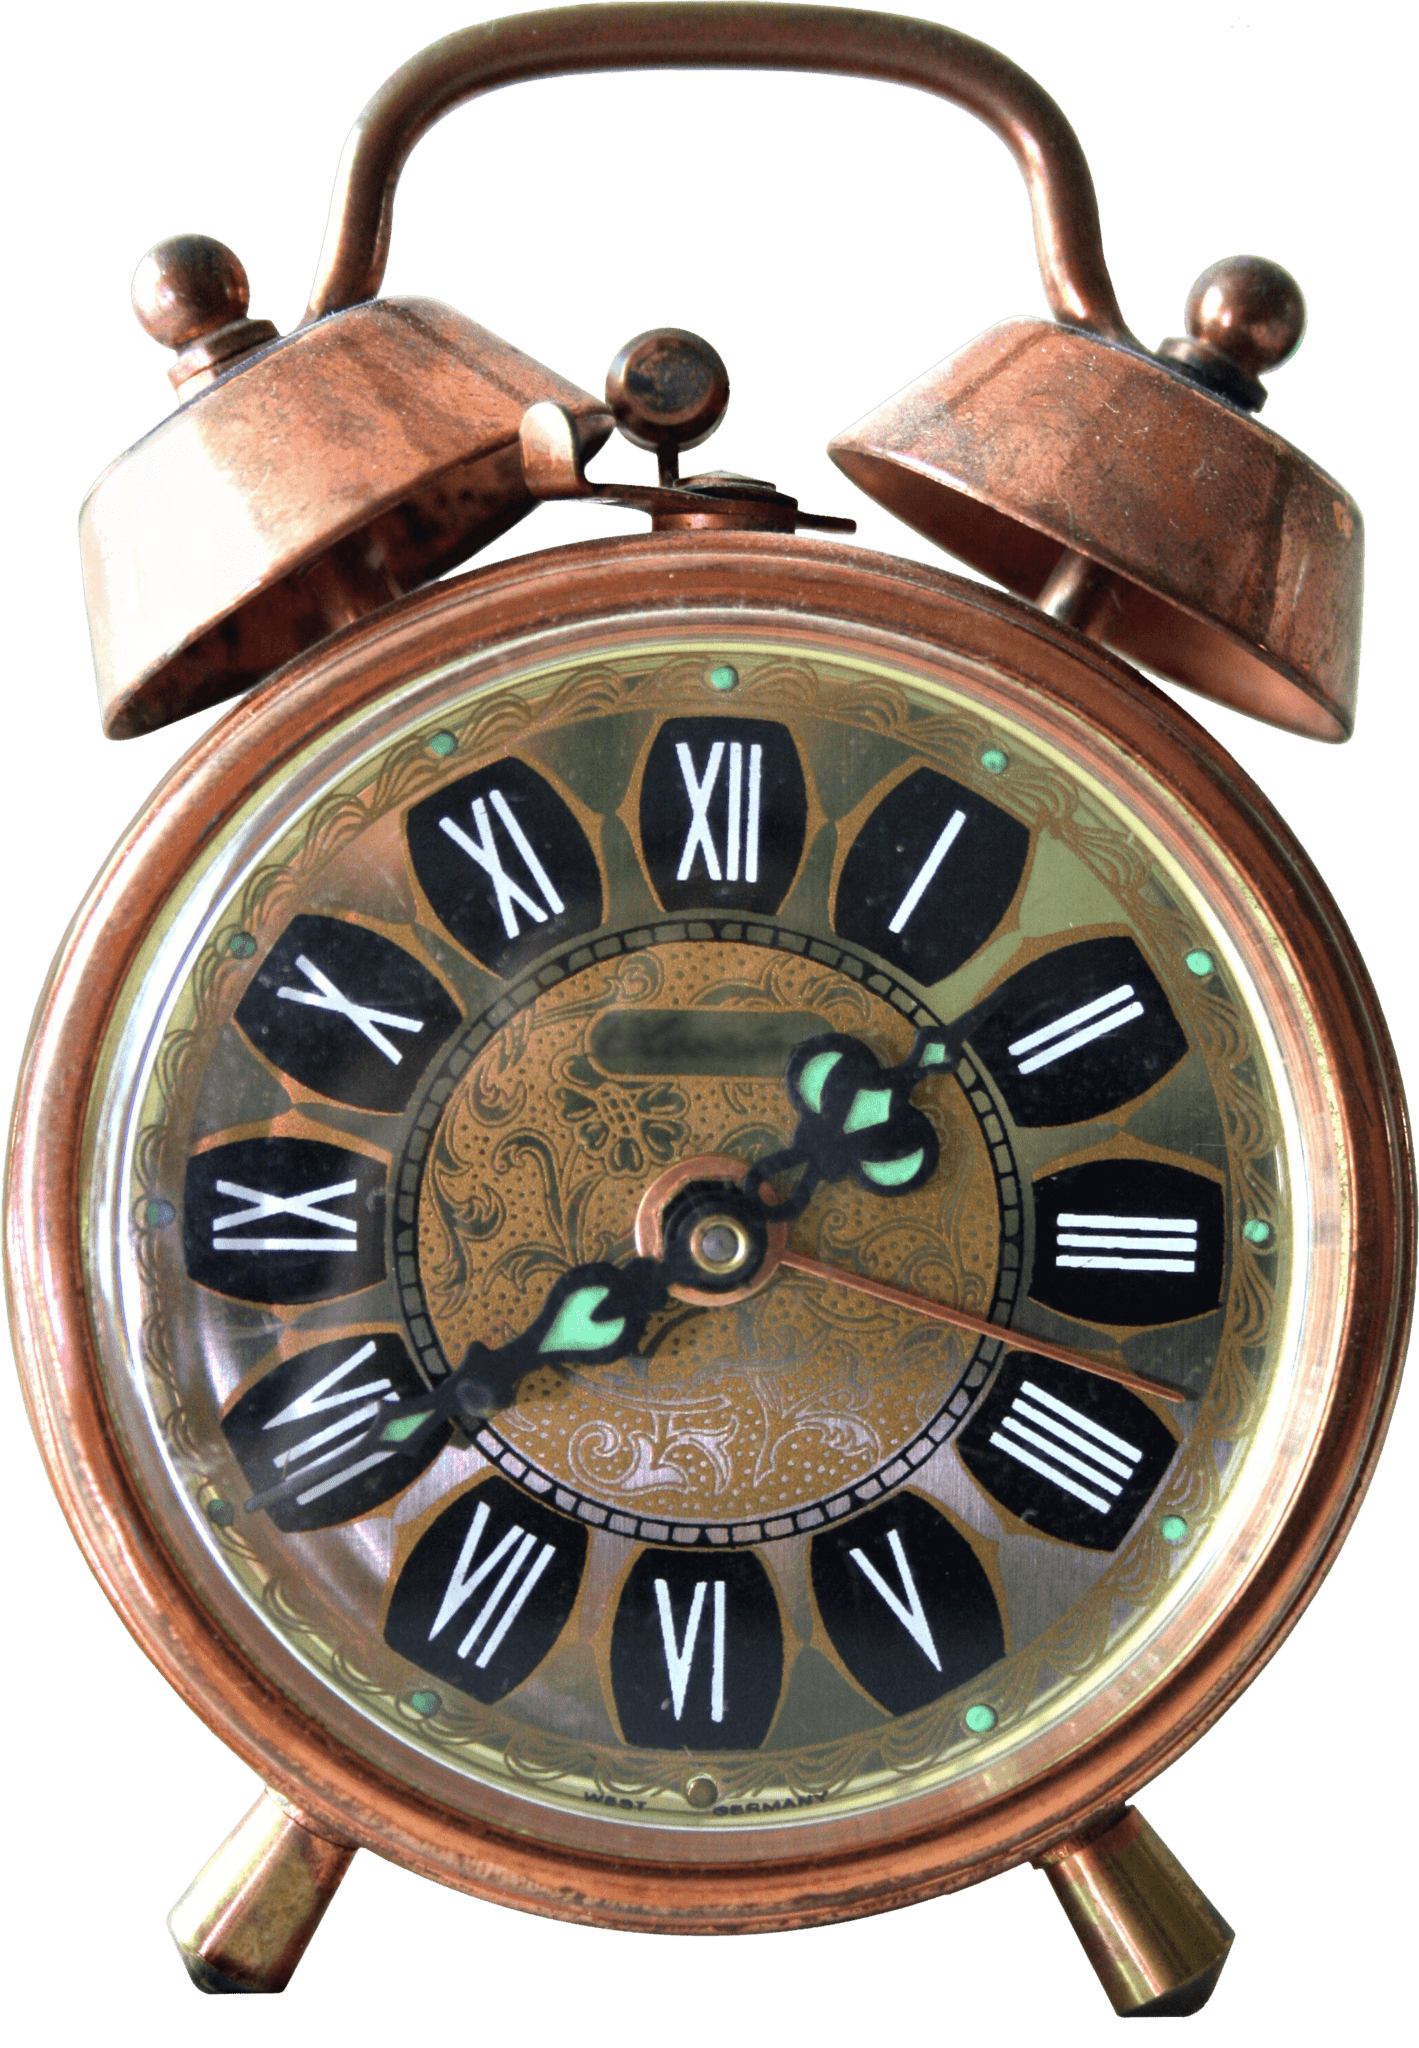 Vintage Alarm Clock PNG em alta reso.ução para baixar grátis